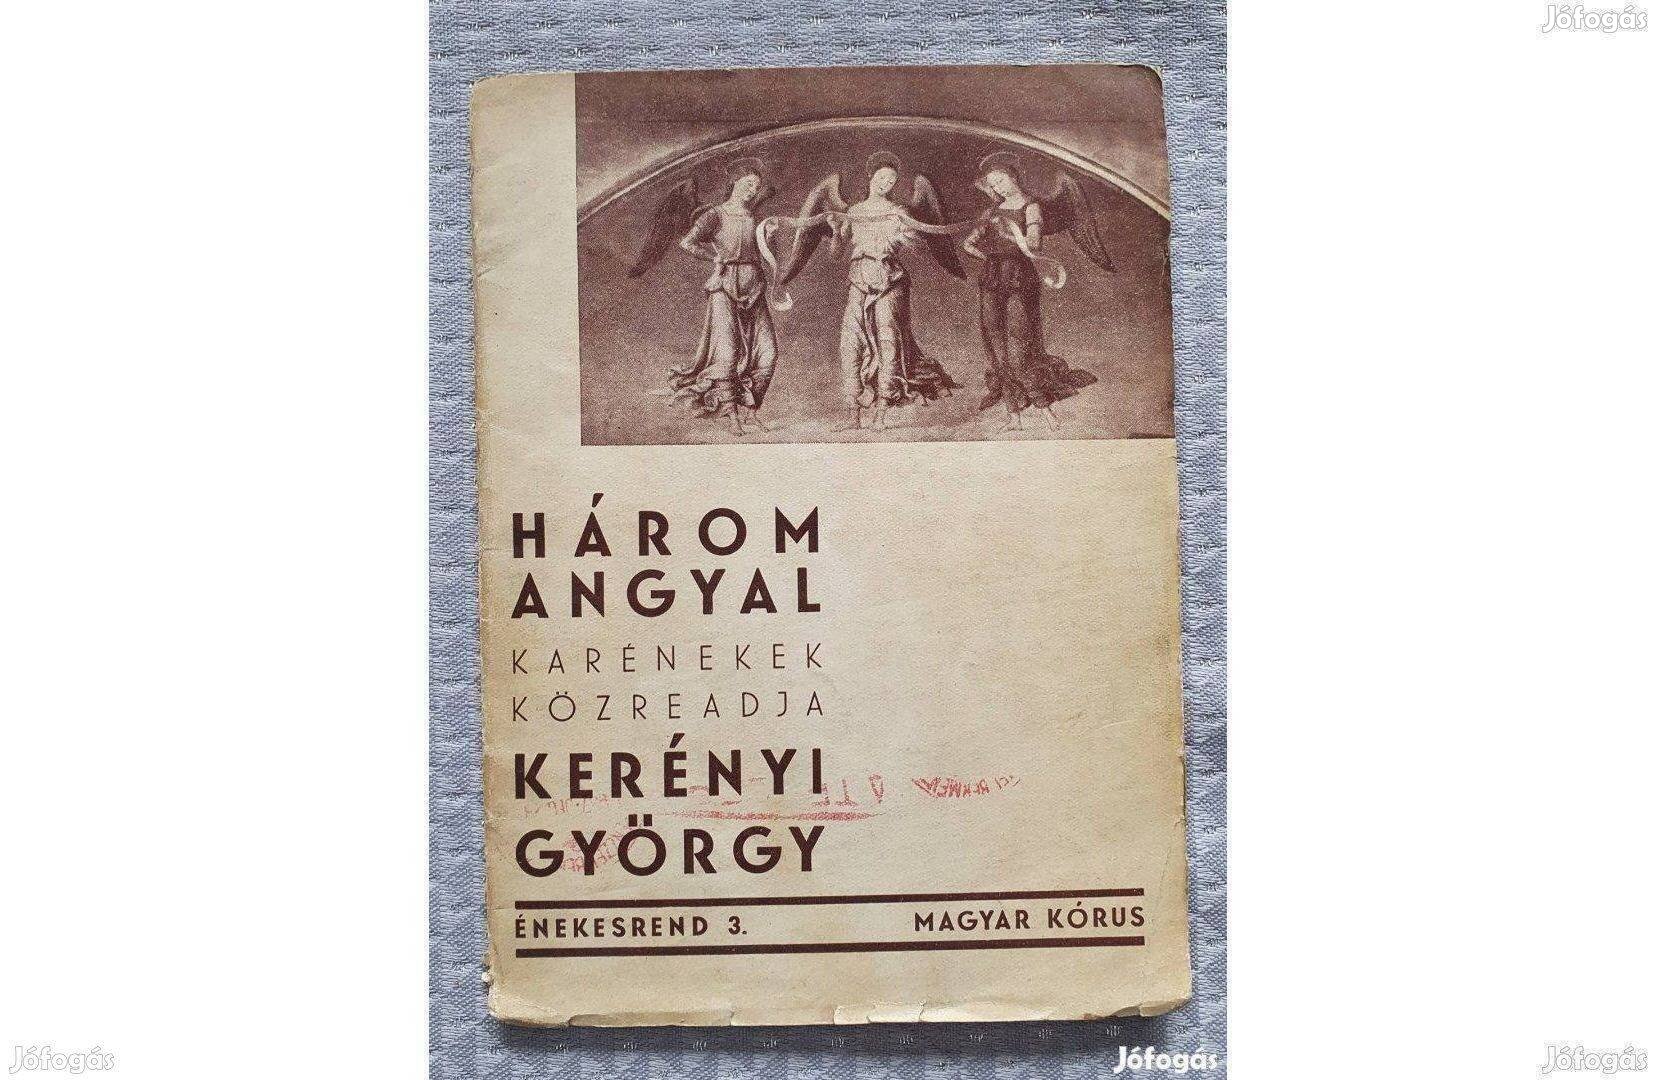 Kerényi György: Három angyal karénekek kotta